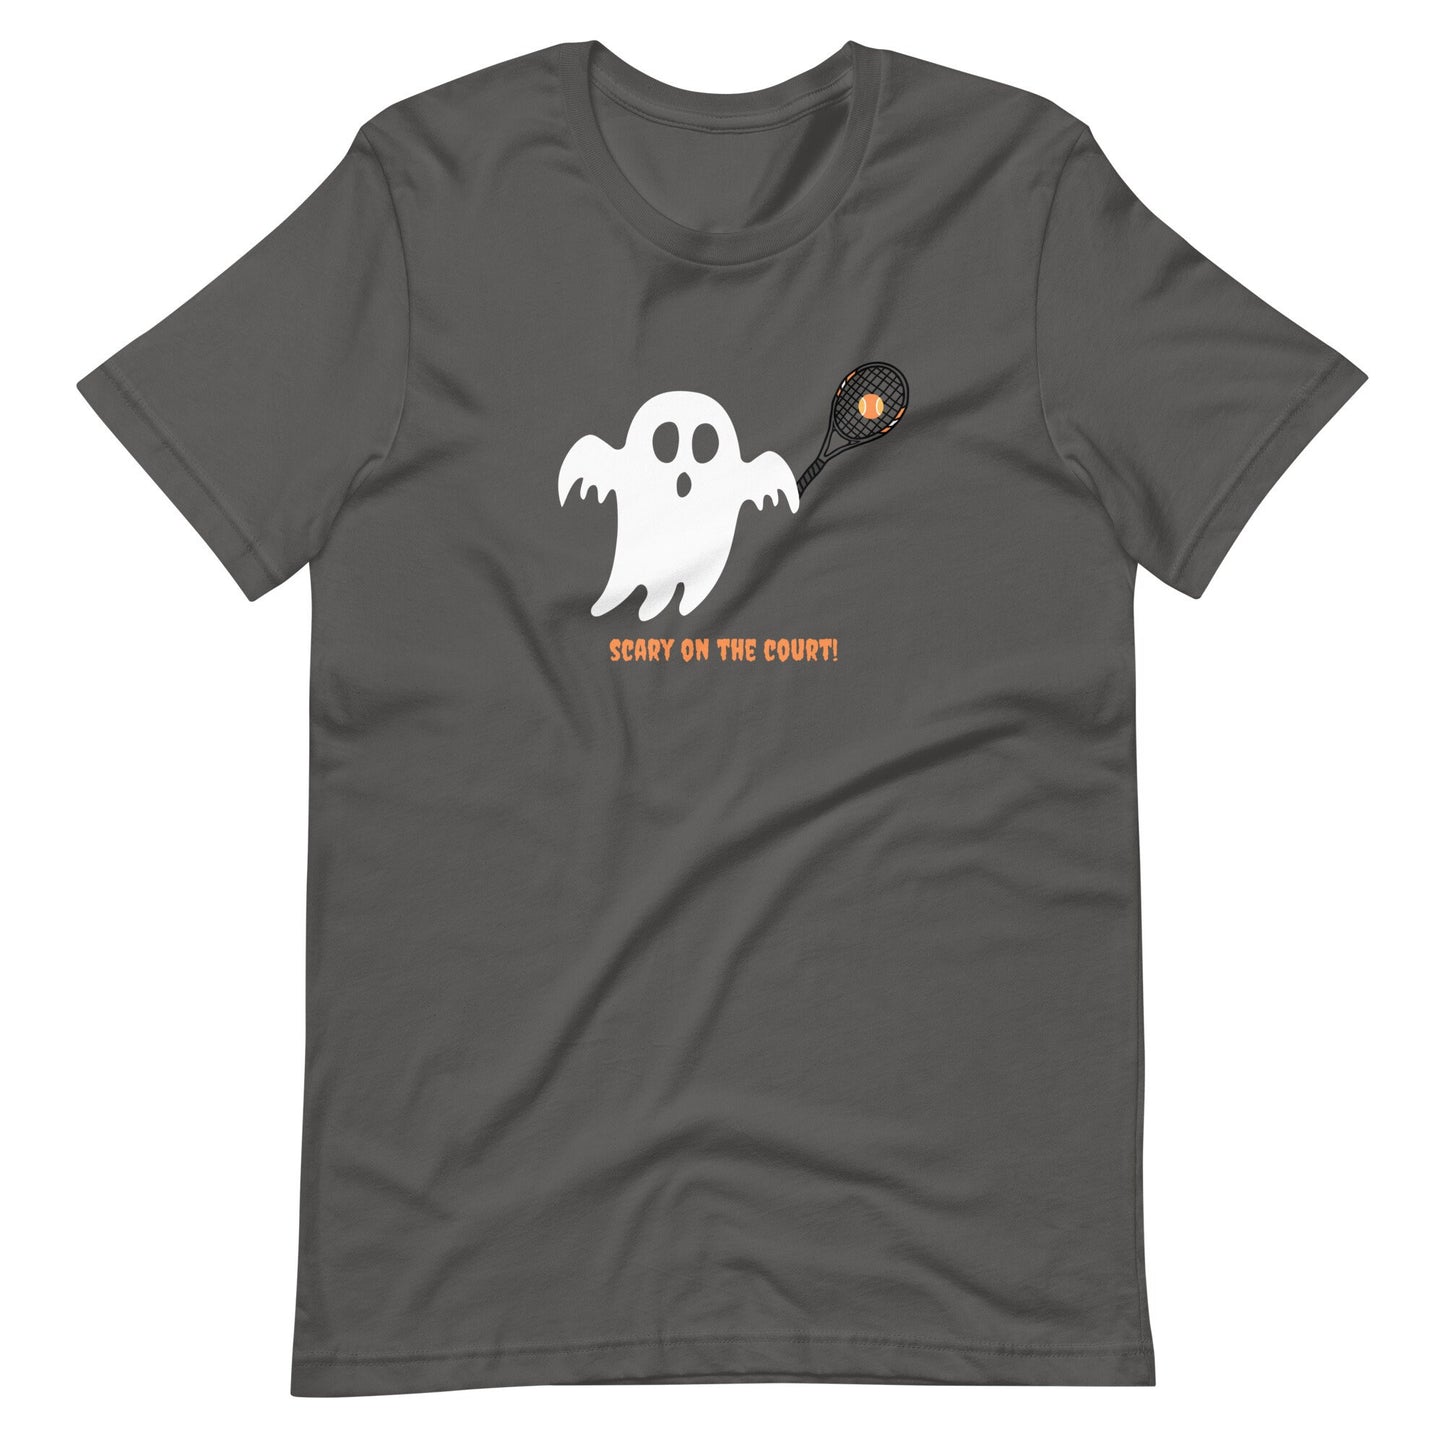 Tennis t-shirt, Ghost Shirt, Halloween Shirt, Funny Tennis Shirt, Tennis Player, tennis Gifts, Halloween Tennis, Funny Halloween shirt